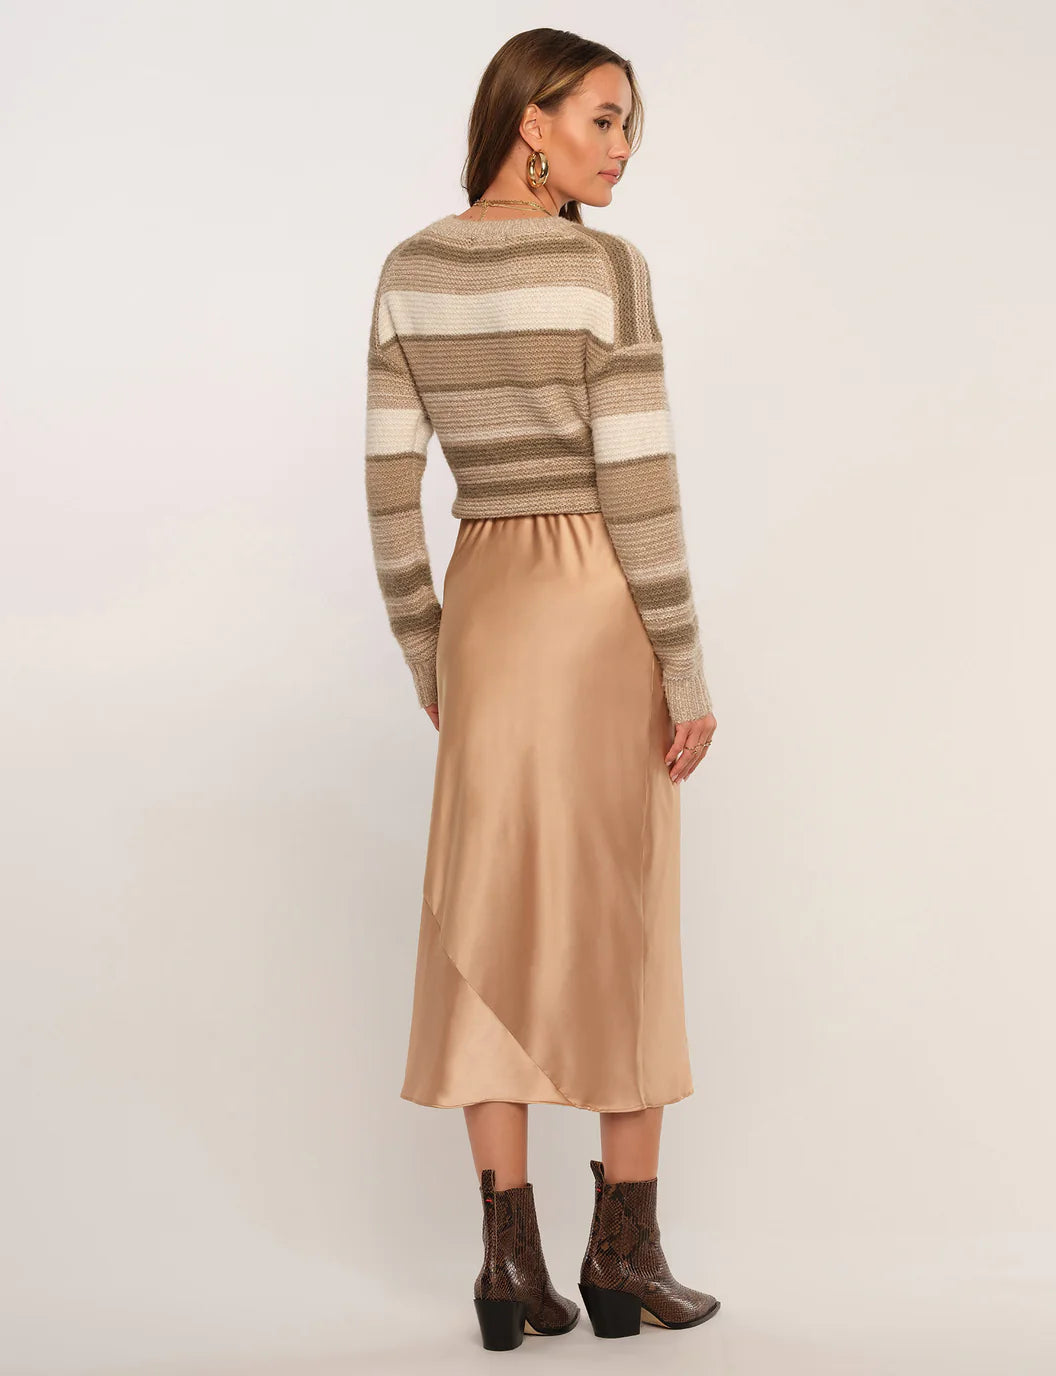 FINAL SALE- Sheridan Skirt